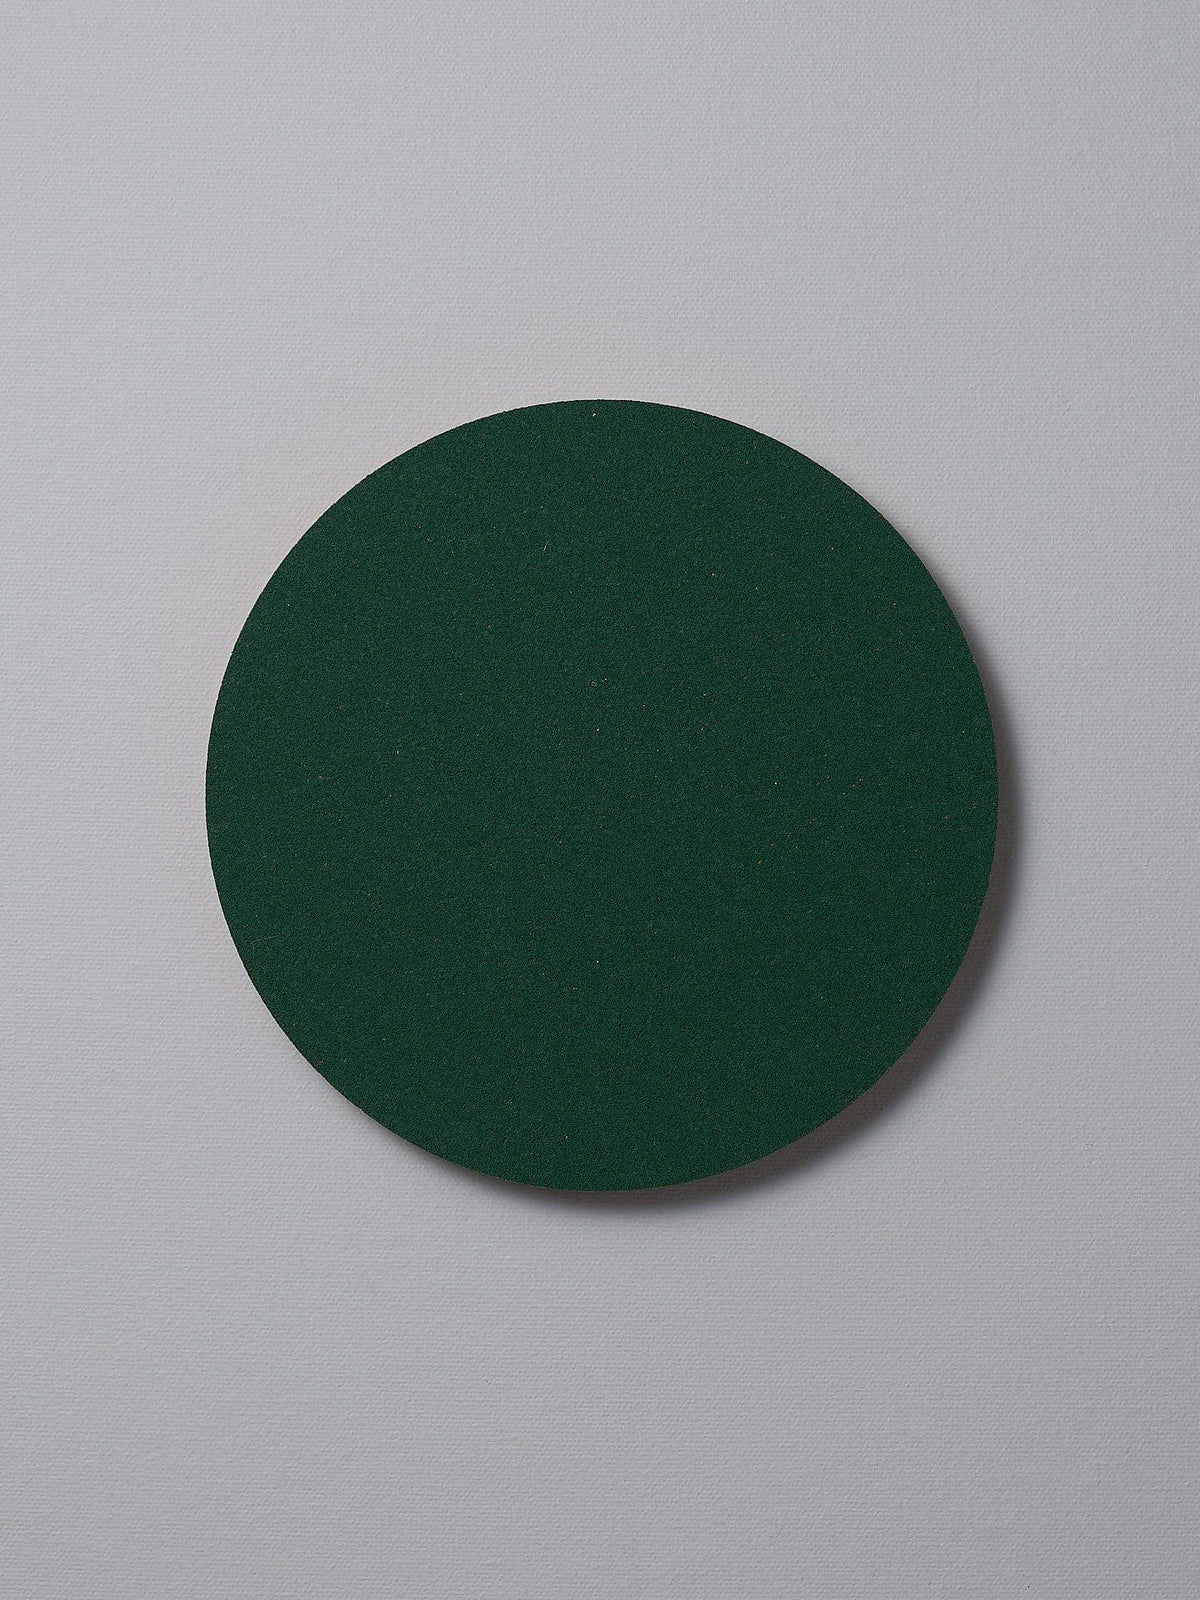 A Trivet - Racing Green by Iris Hantverk on a white surface.